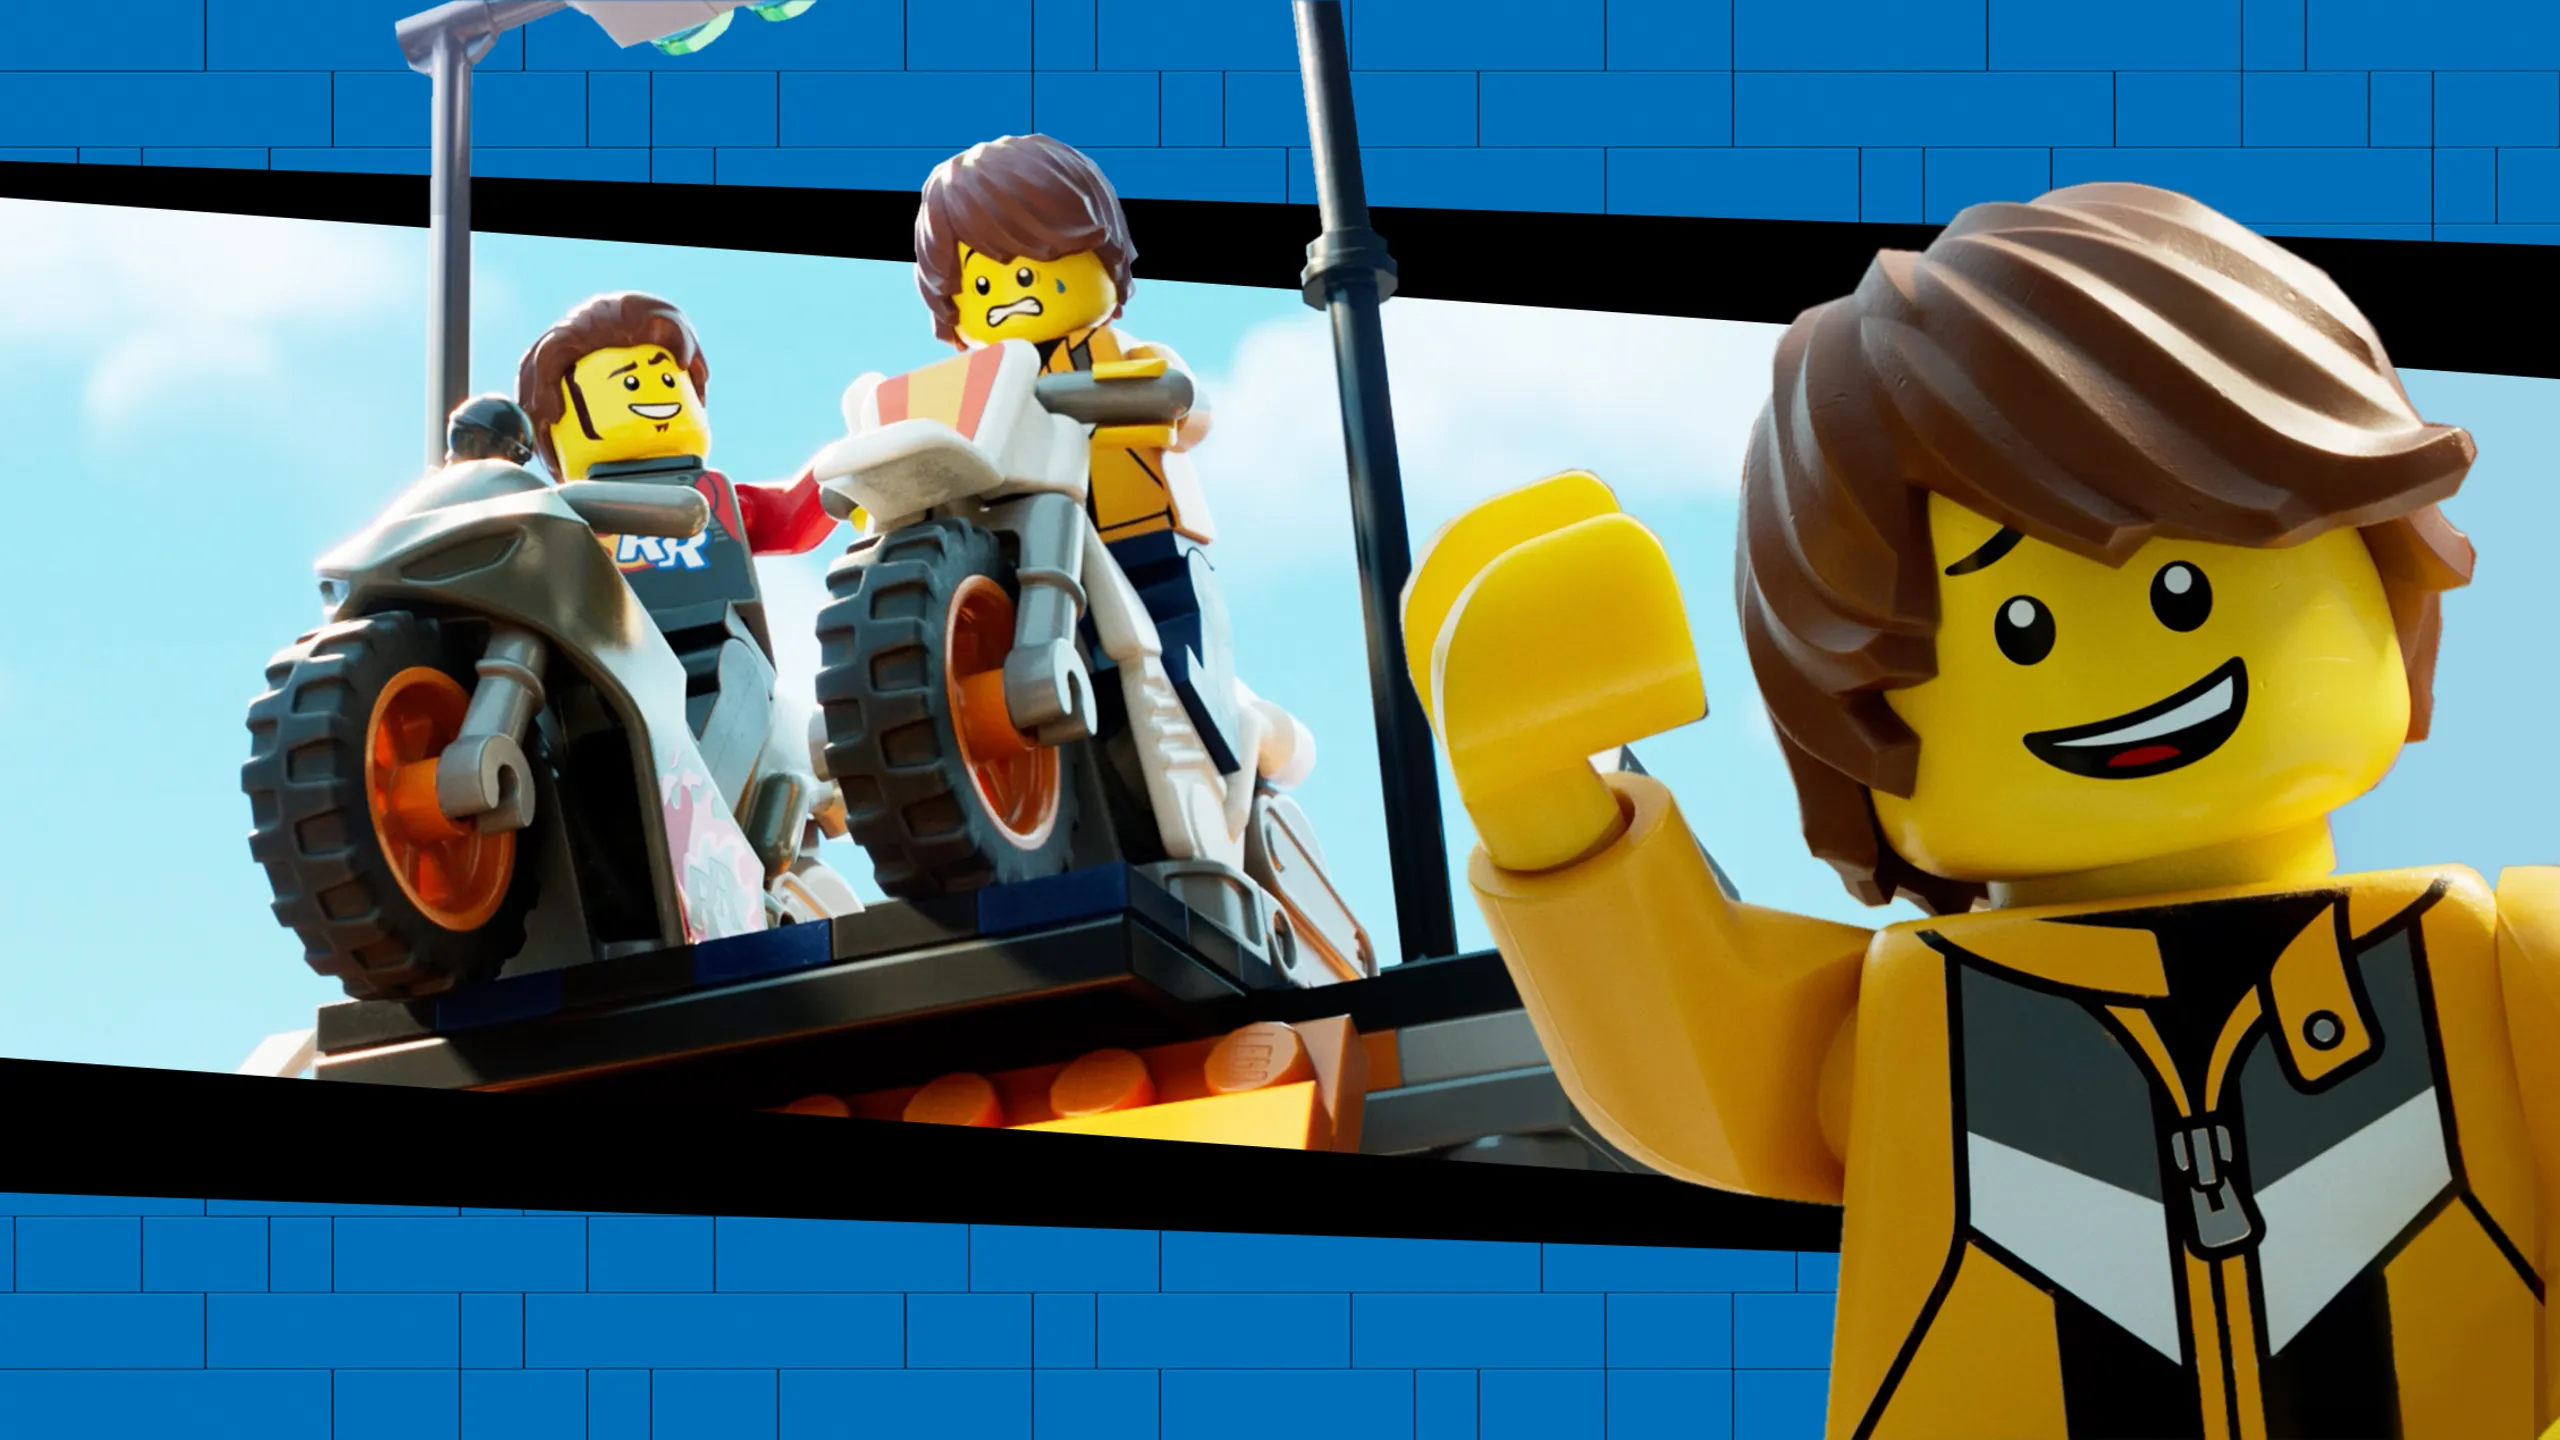 Jeux de construction Lego City - Emergency Response Center